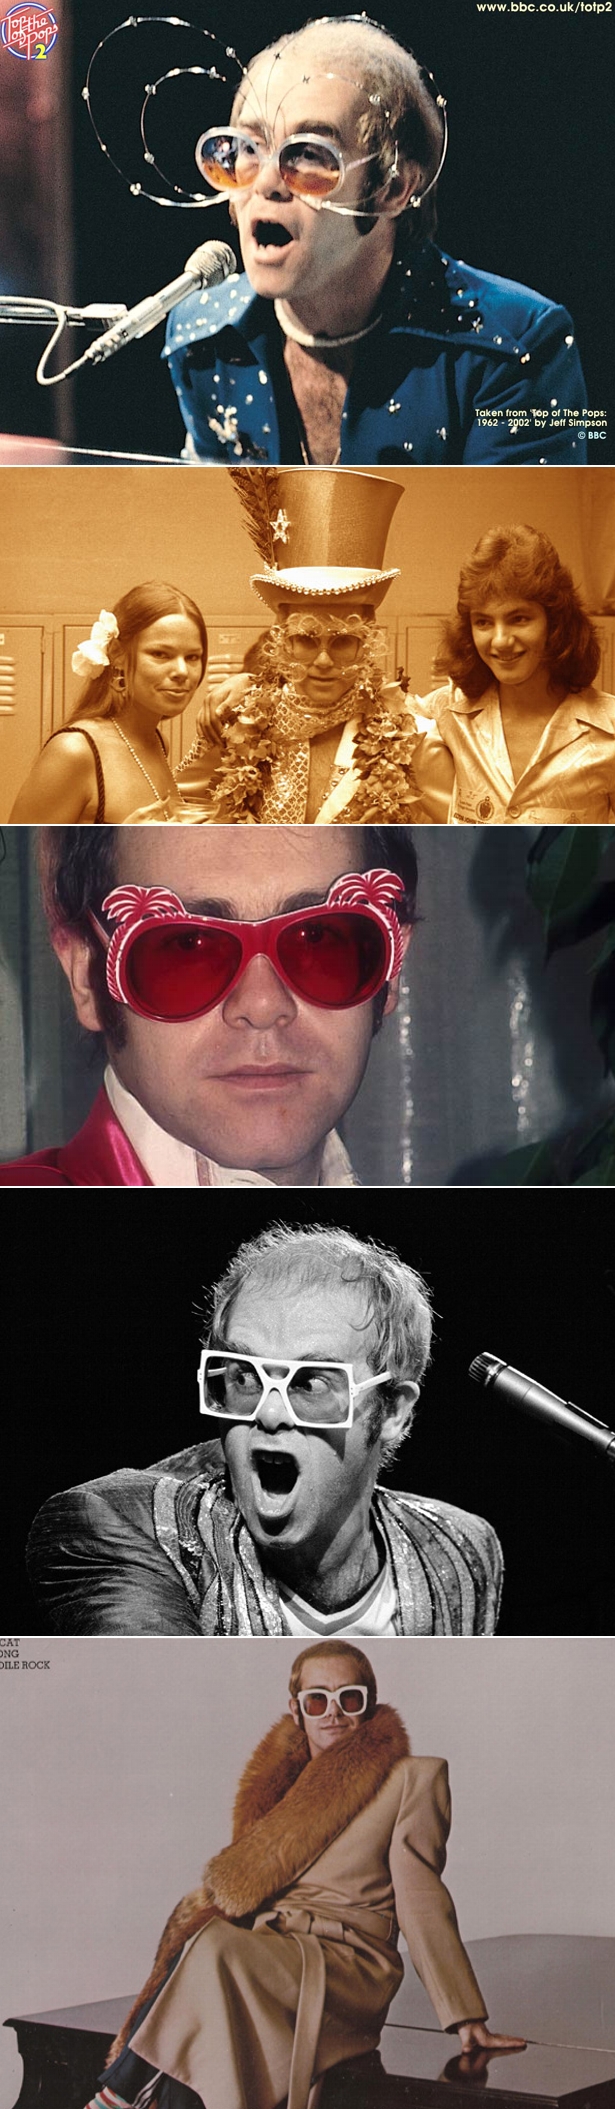 Os incríveis óculos de Sir Elton John2 Os incríveis óculos de Sir Elton John...